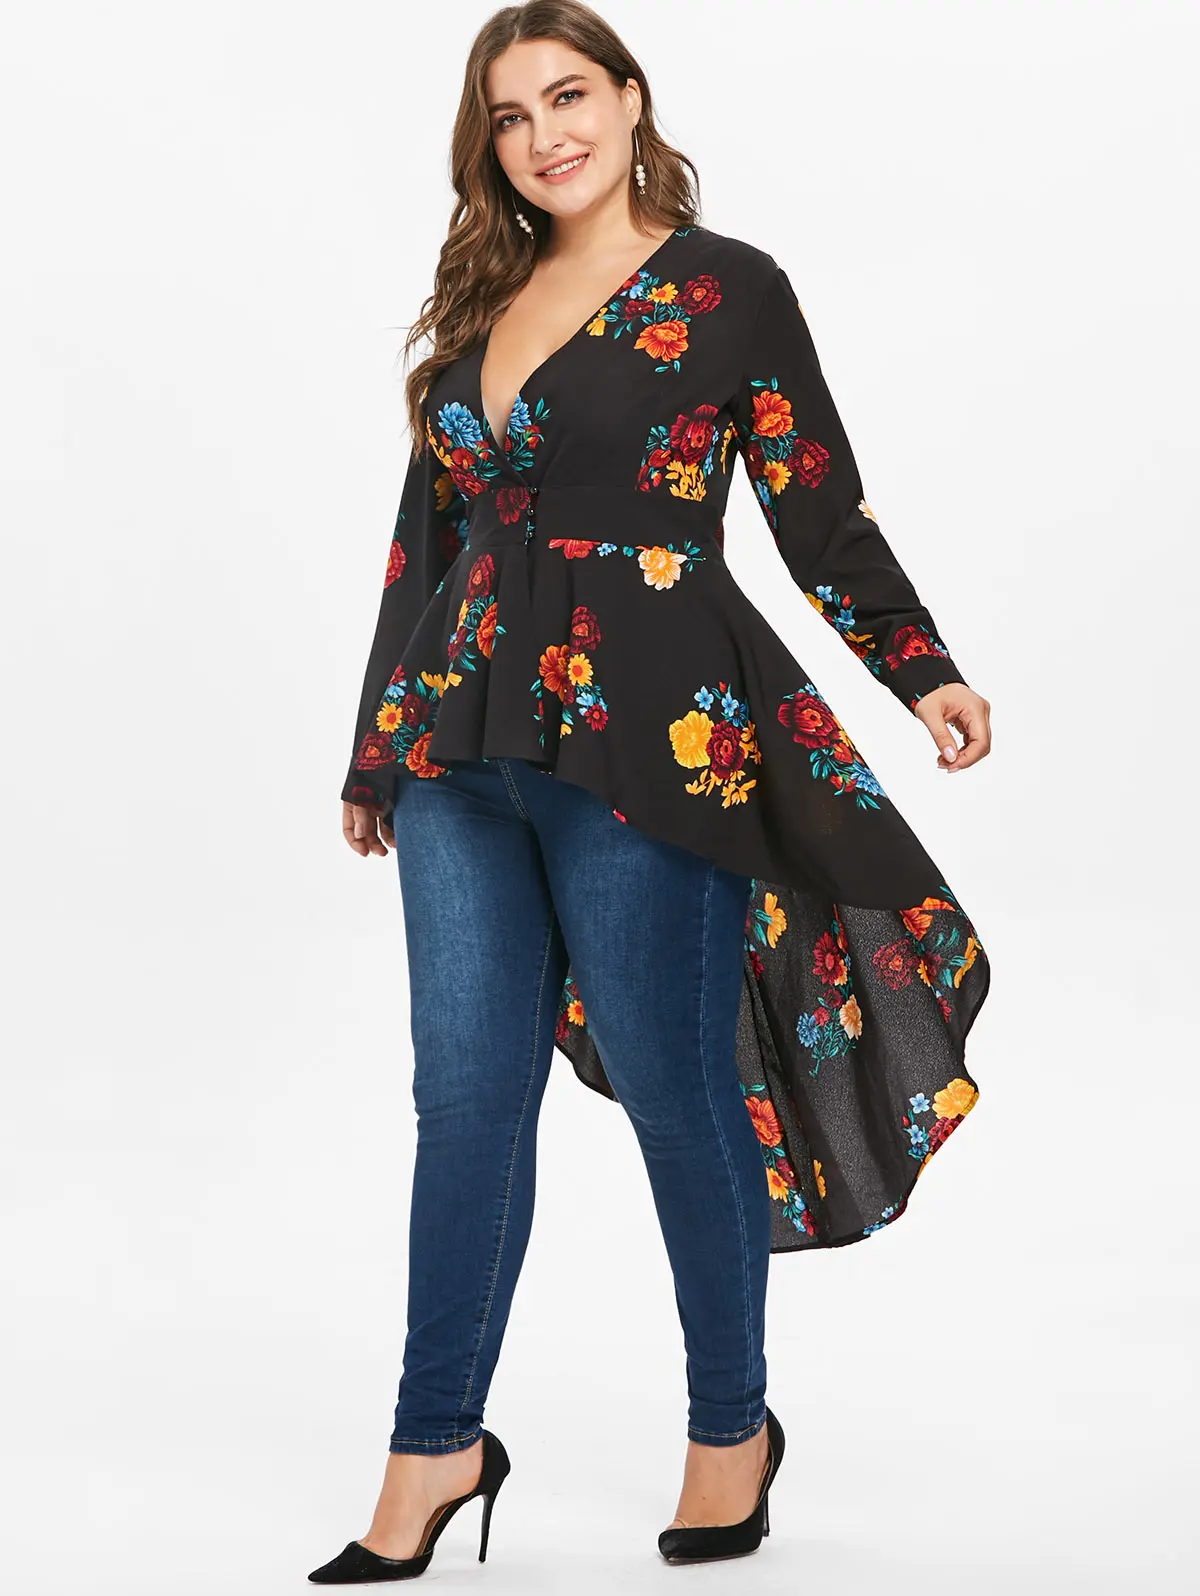 Wipalo Женская блуза с глубоким декольте и цветочным принтом, сексуальный v-образный вырез, туника с длинным рукавом и завышенной талией, большой размер, длинная сзади и коротка спереди рубашка-туника